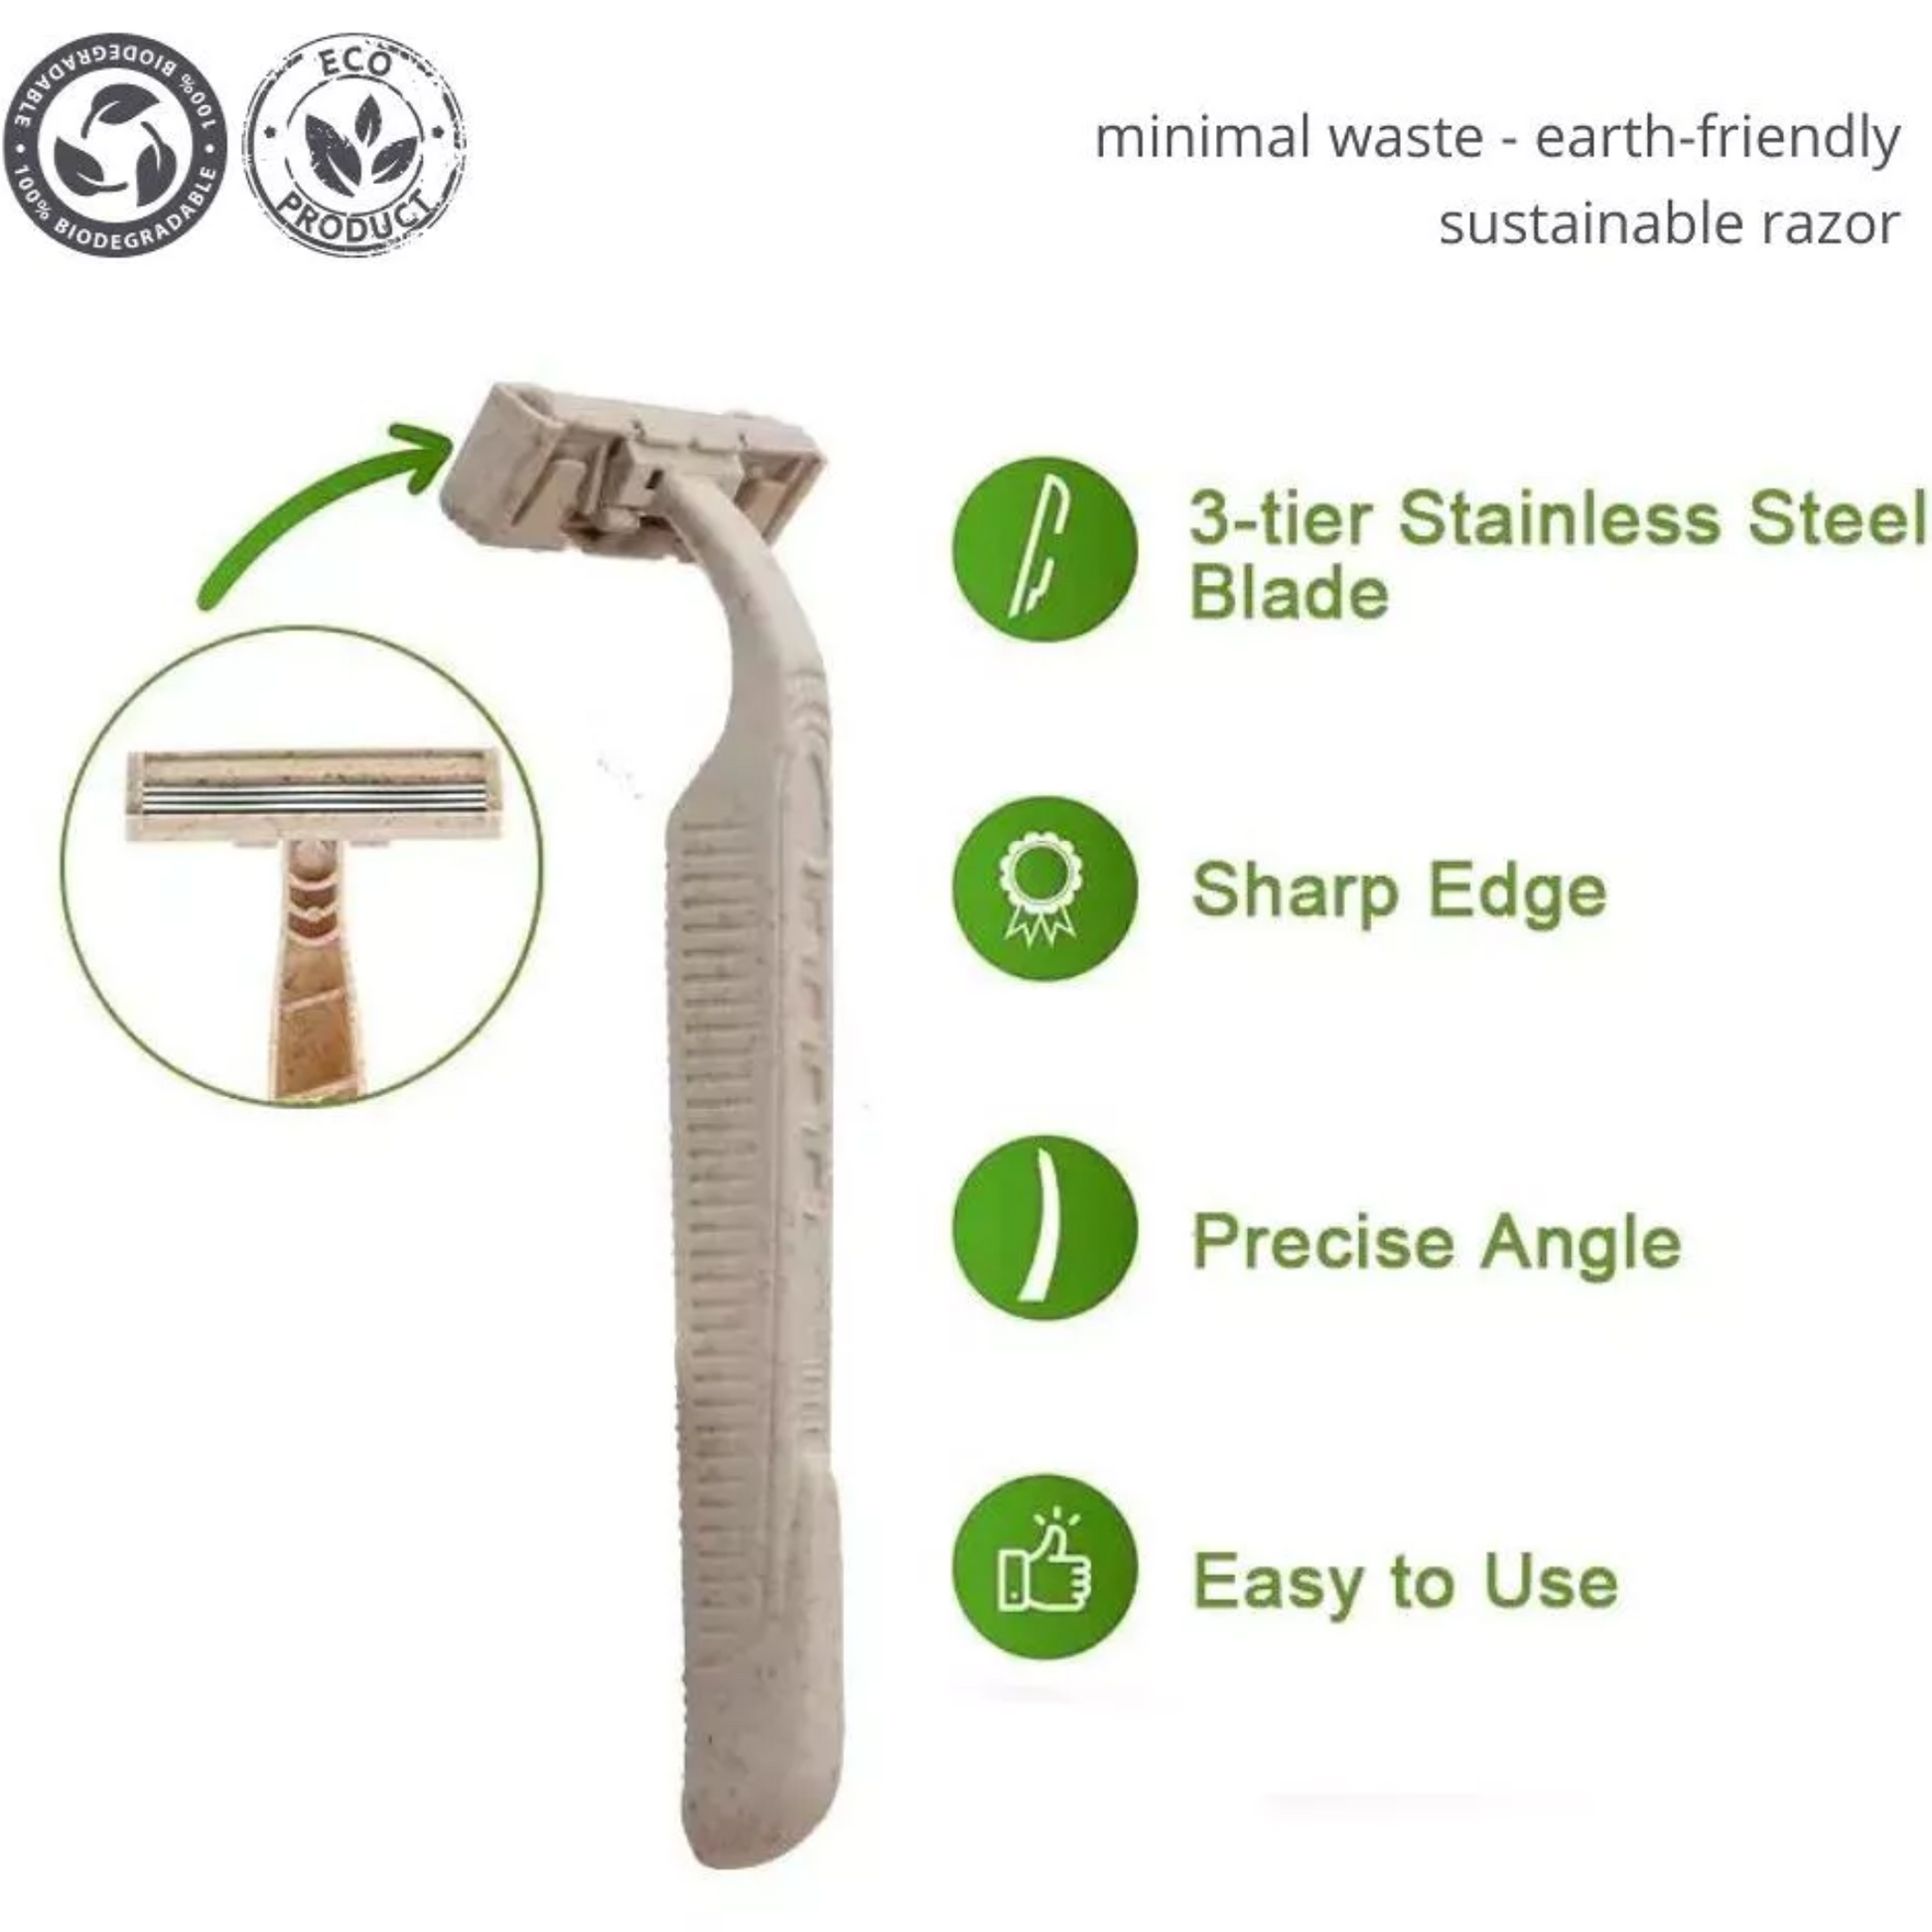 Abbildung mit den Merkmalen des Einwegrasierers minimal waste earth-friendly sustainable razor